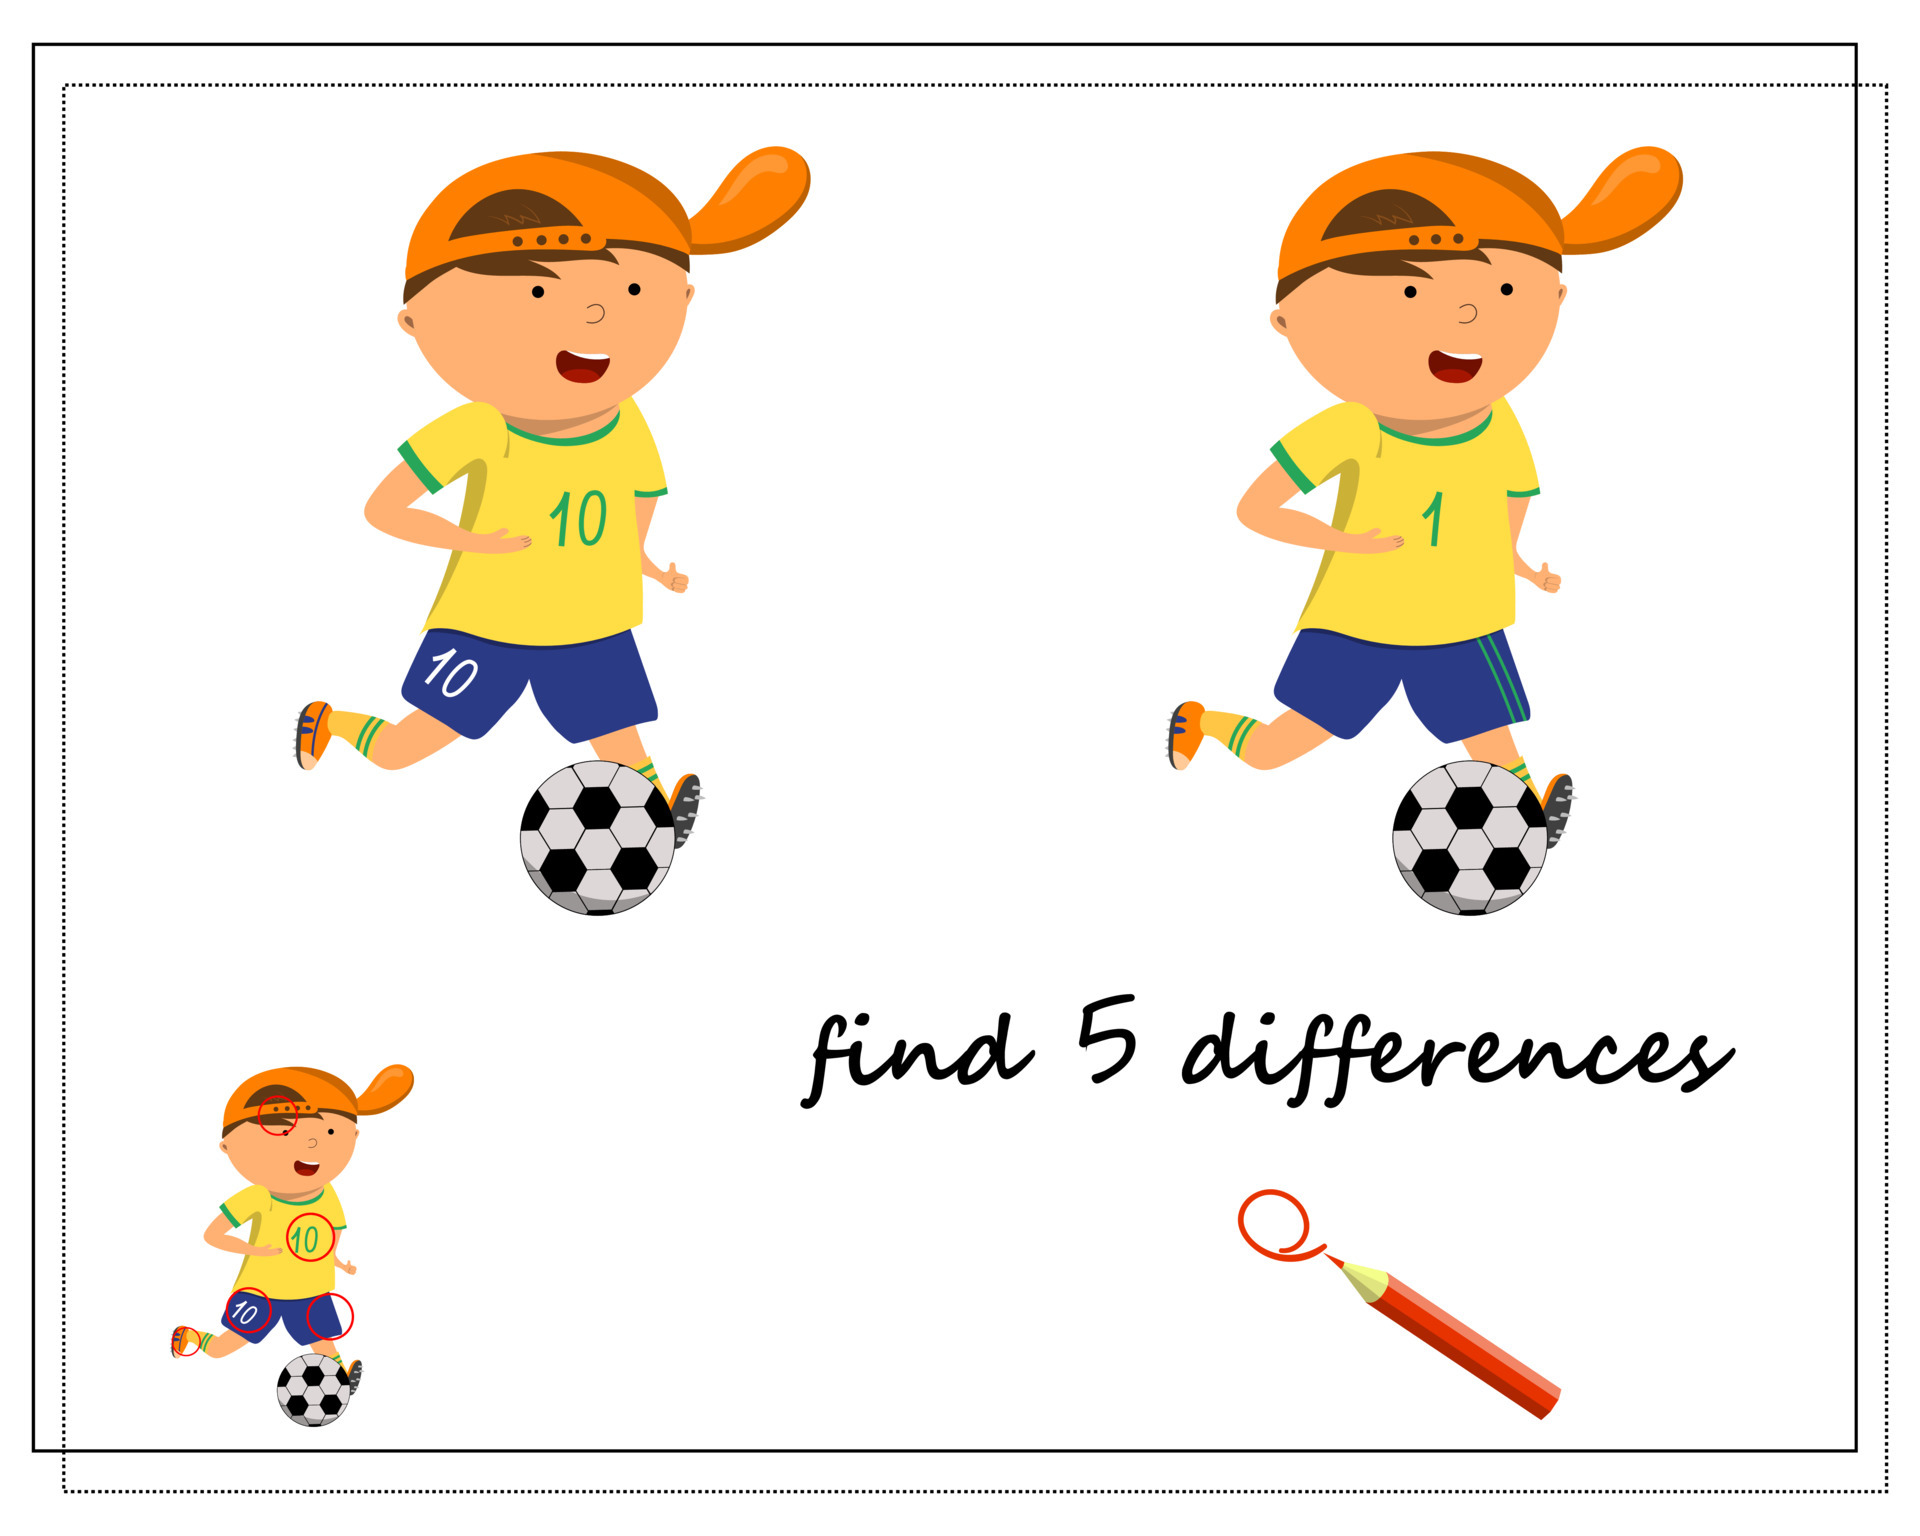 um jogo para crianças encontra as diferenças, jogador de futebol dos  desenhos animados 6815863 Vetor no Vecteezy